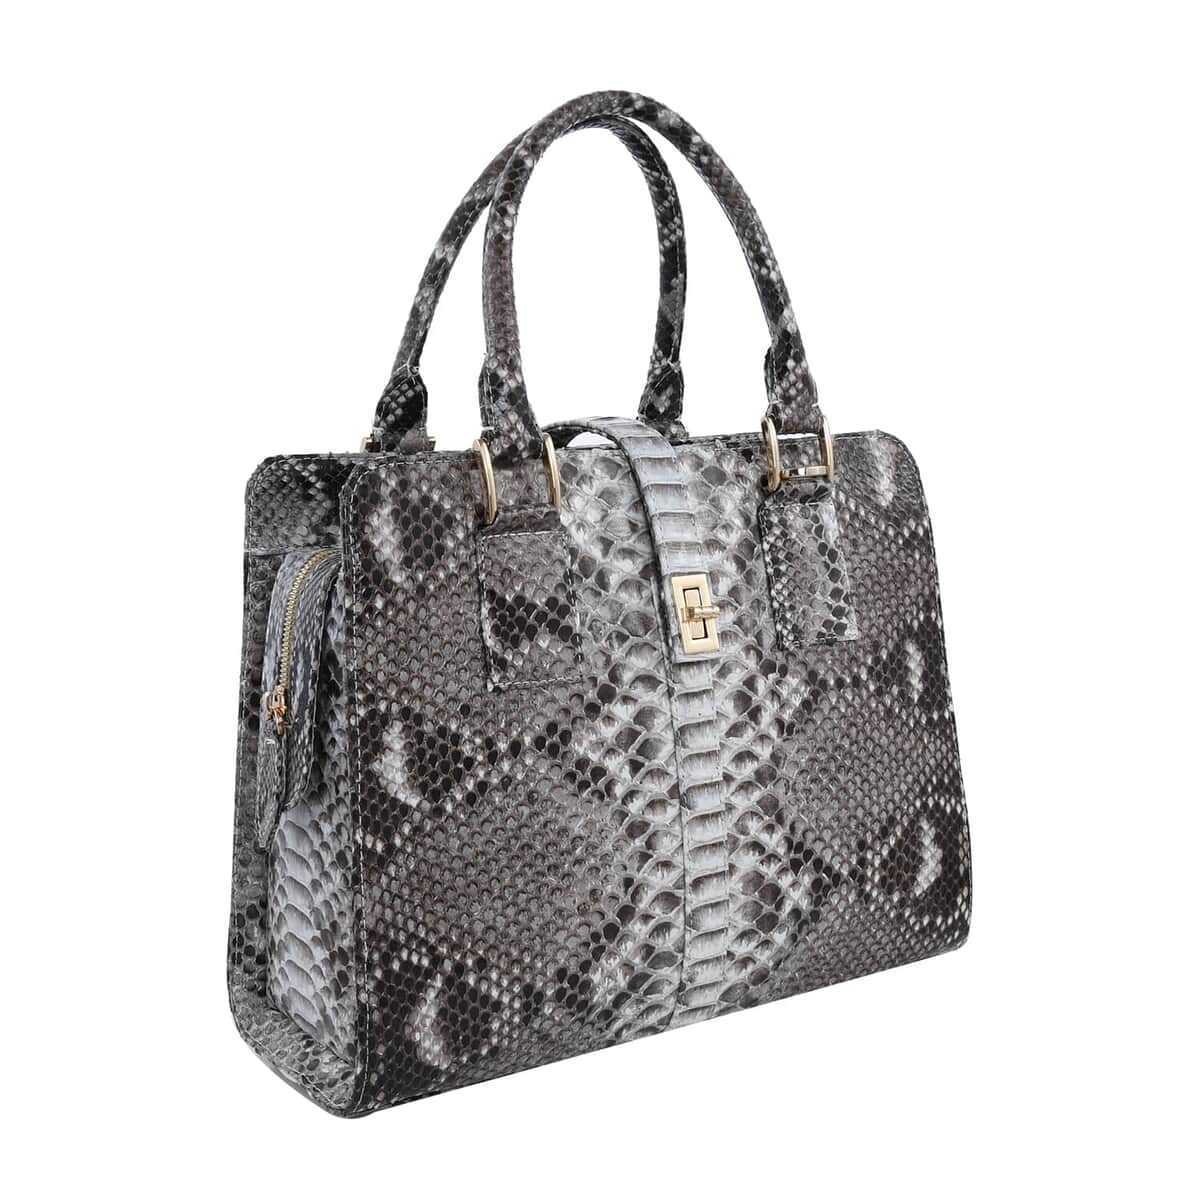 The Pelle Python Skin Bag Collection Natural Color 100% Genuine Python Leather Tote Bag, Shoulder Handbag, Designer Tote Bag For Women image number 4